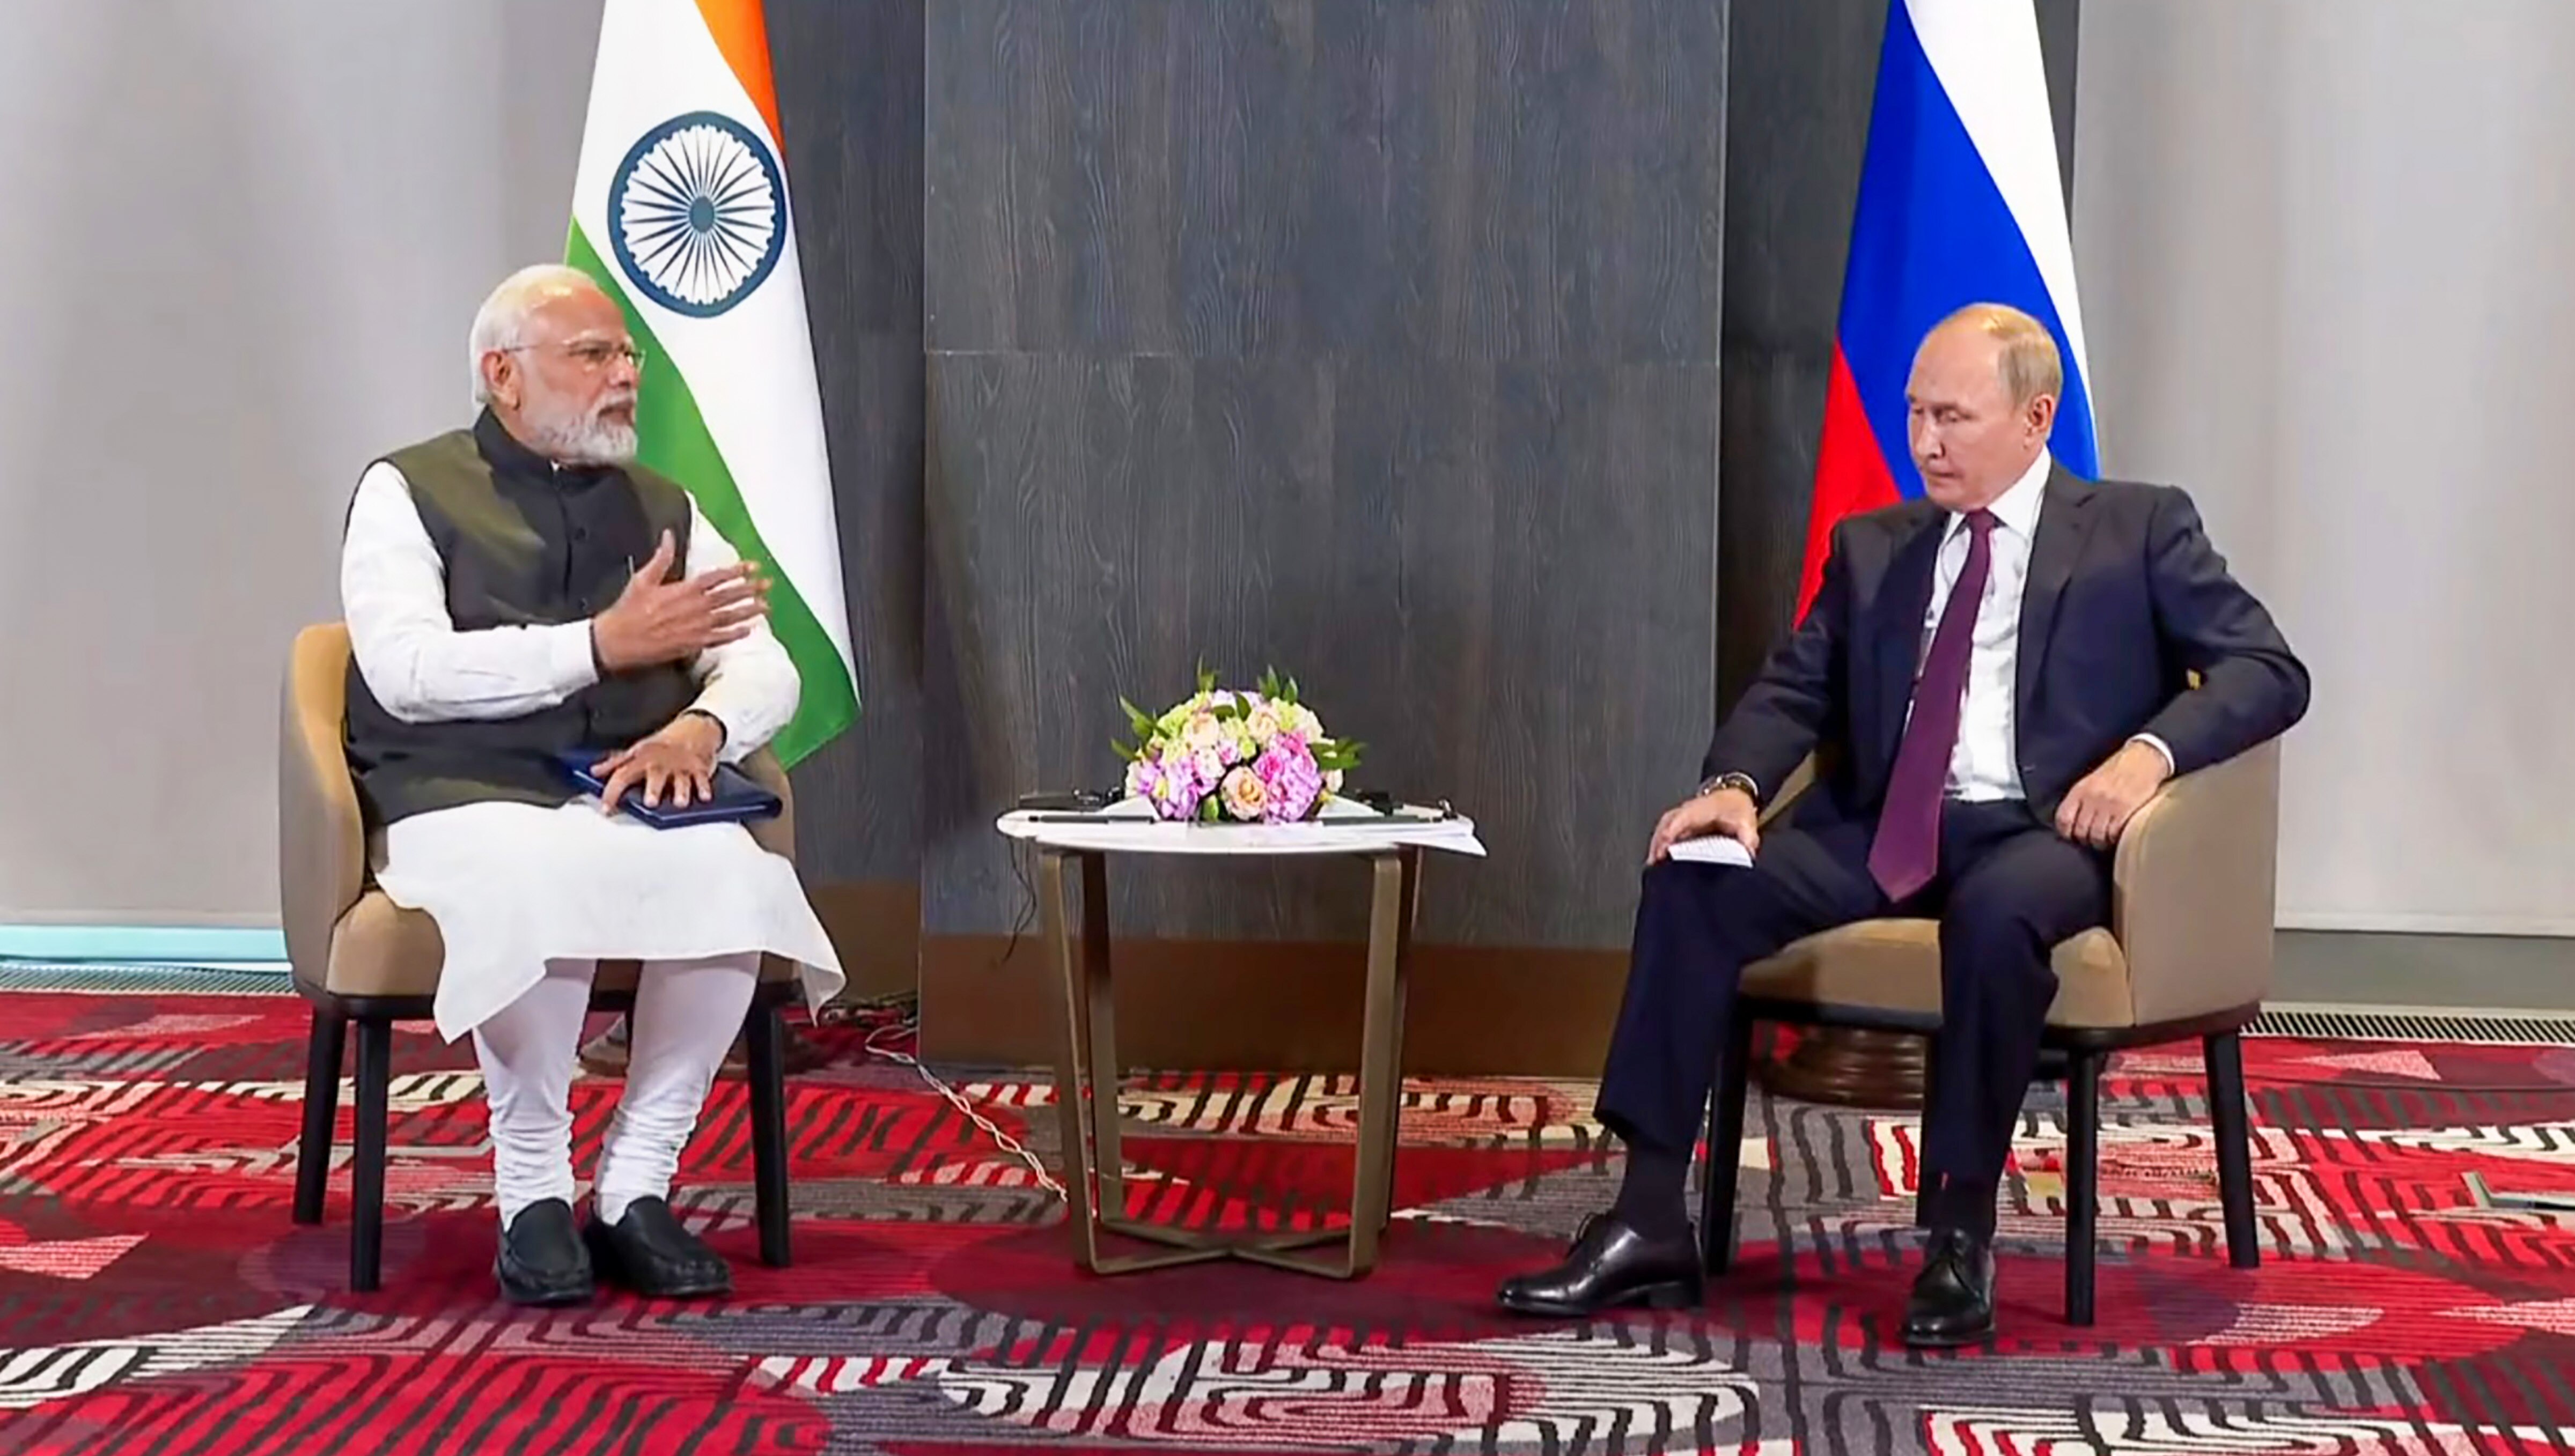 एस जयशंकर के मॉस्को पहुंचने से पहले रूस ने भारत को लेकर पूरी दुनिया को क्या दिया संदेश?